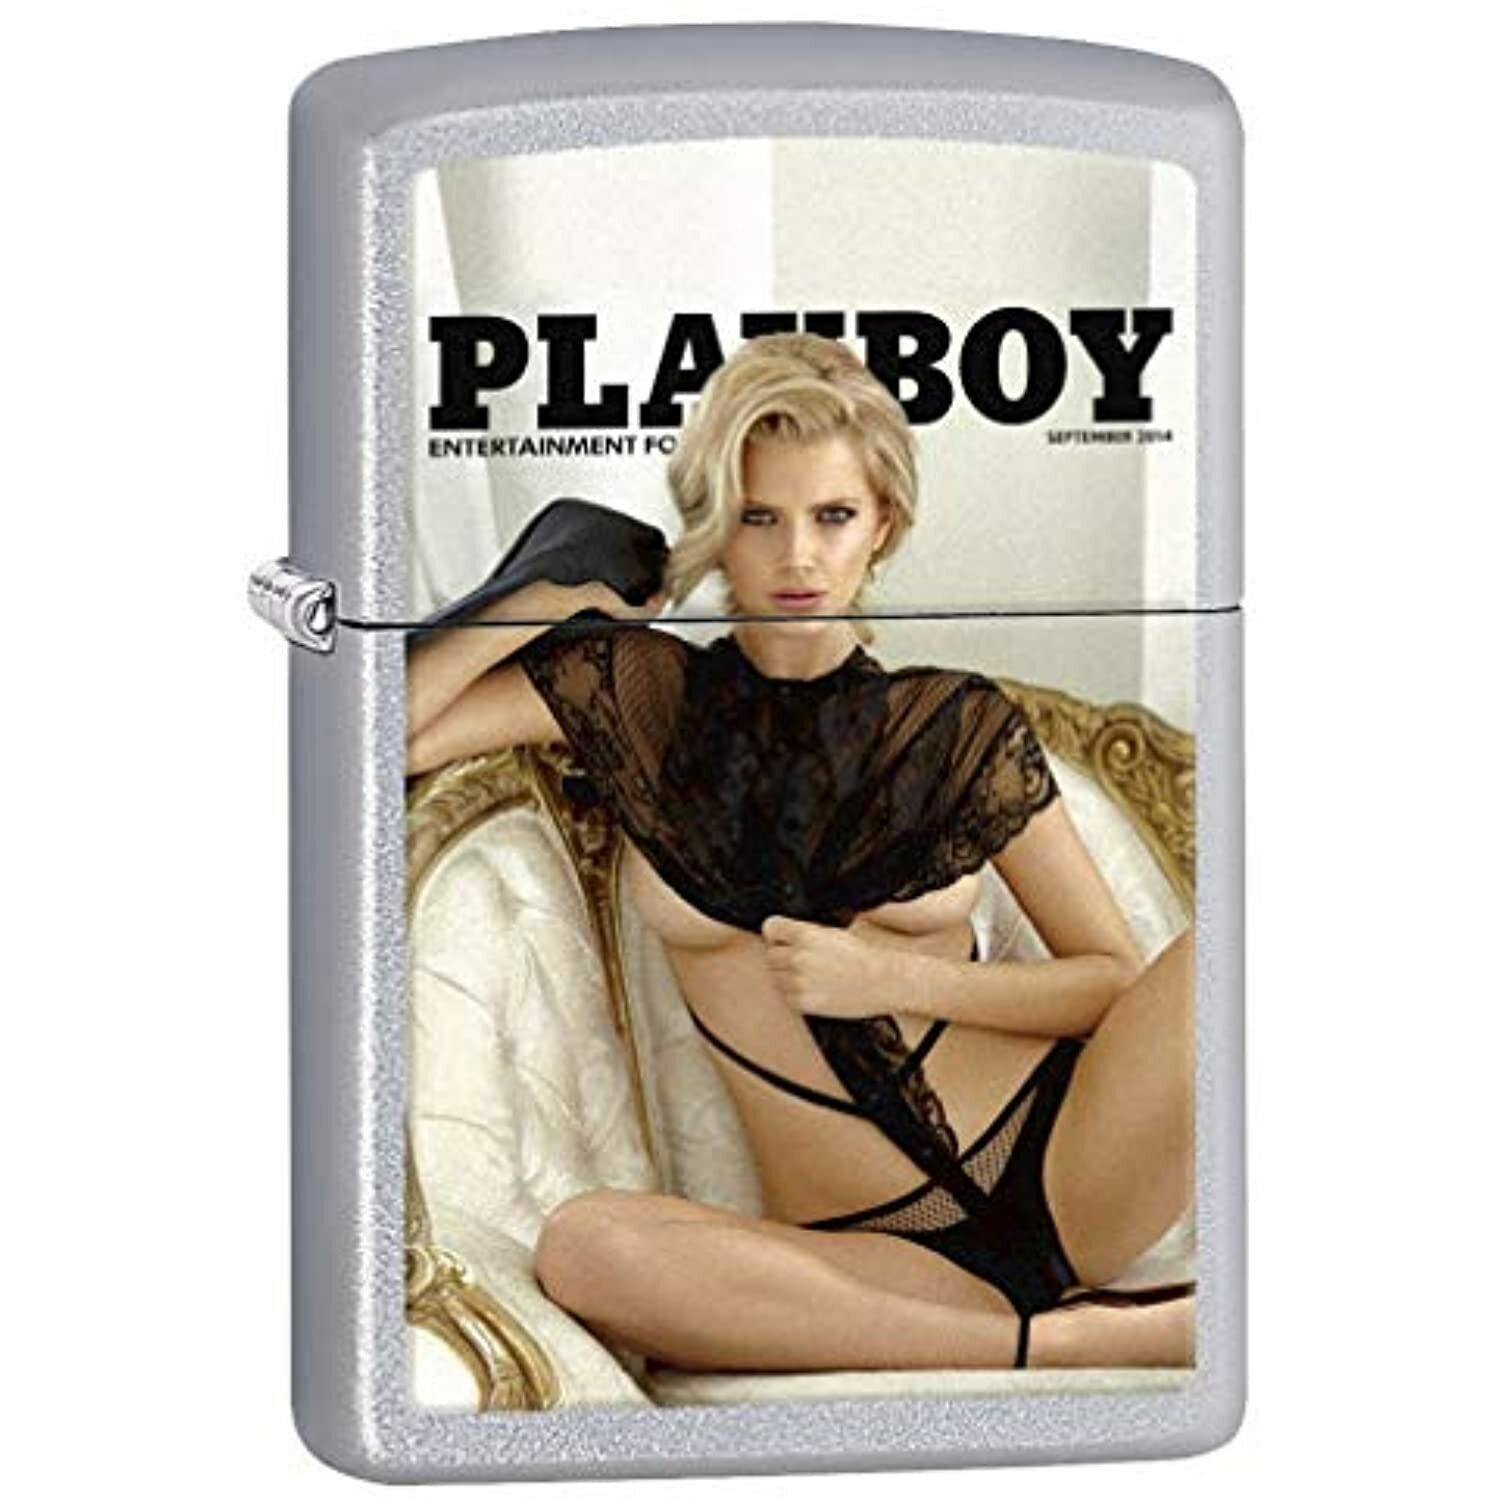 Zippo Lighter: Playboy Cover September 2014 - Satin Chrome 77979